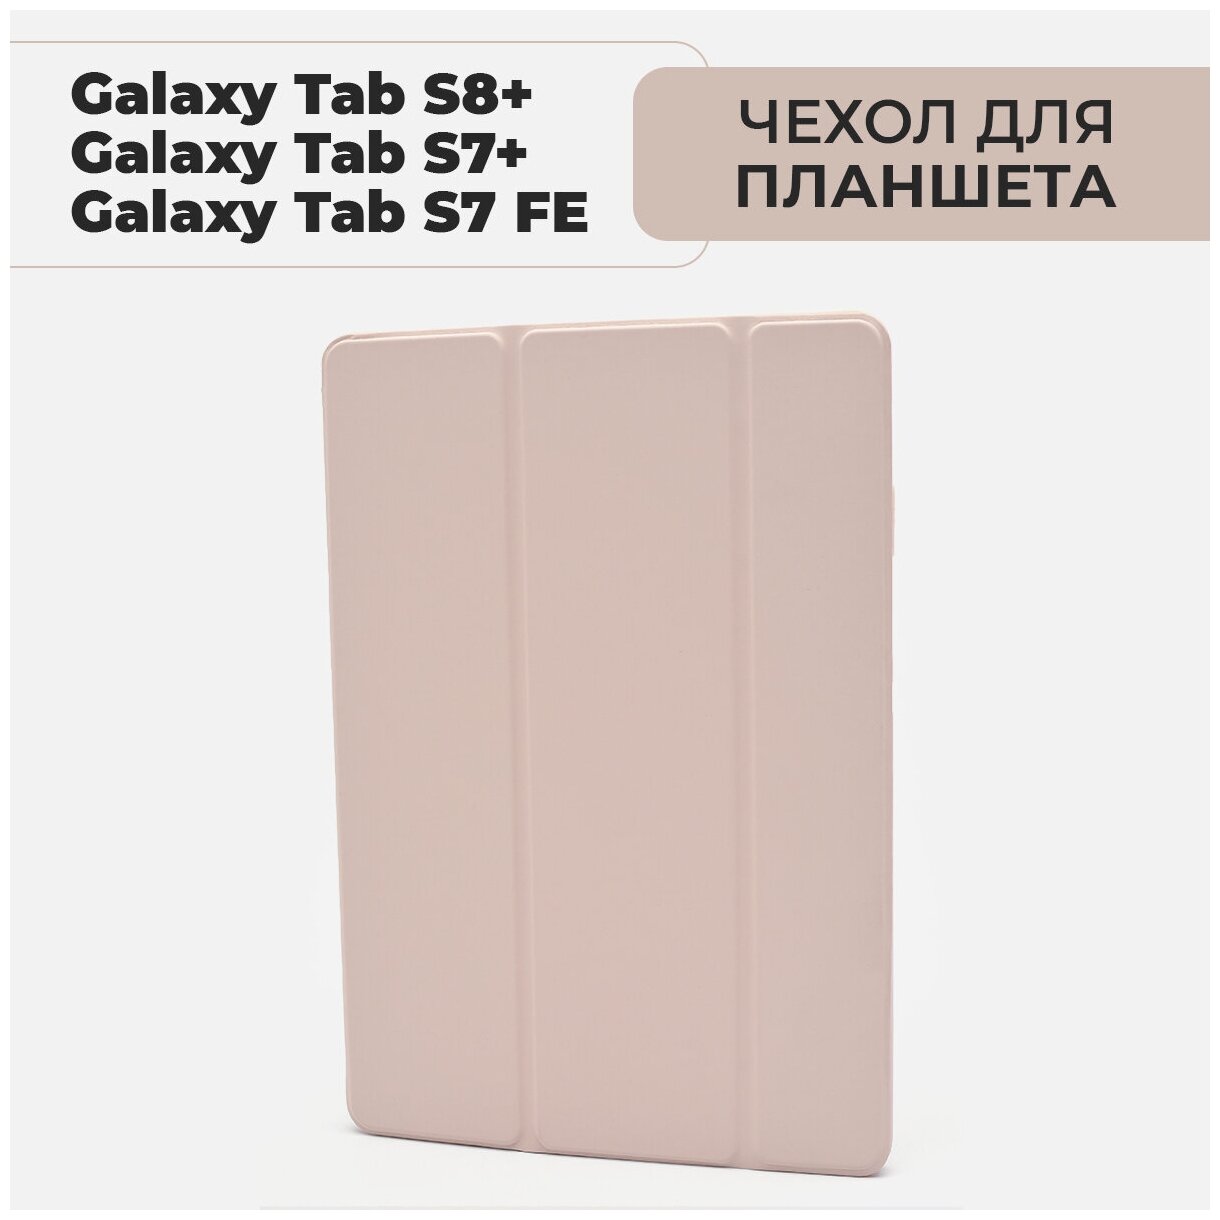 Чехол для планшета Samsung Galaxy Tab S7 Plus / S7 FE Lite / S8 Plus, с местом для стилуса, розовый